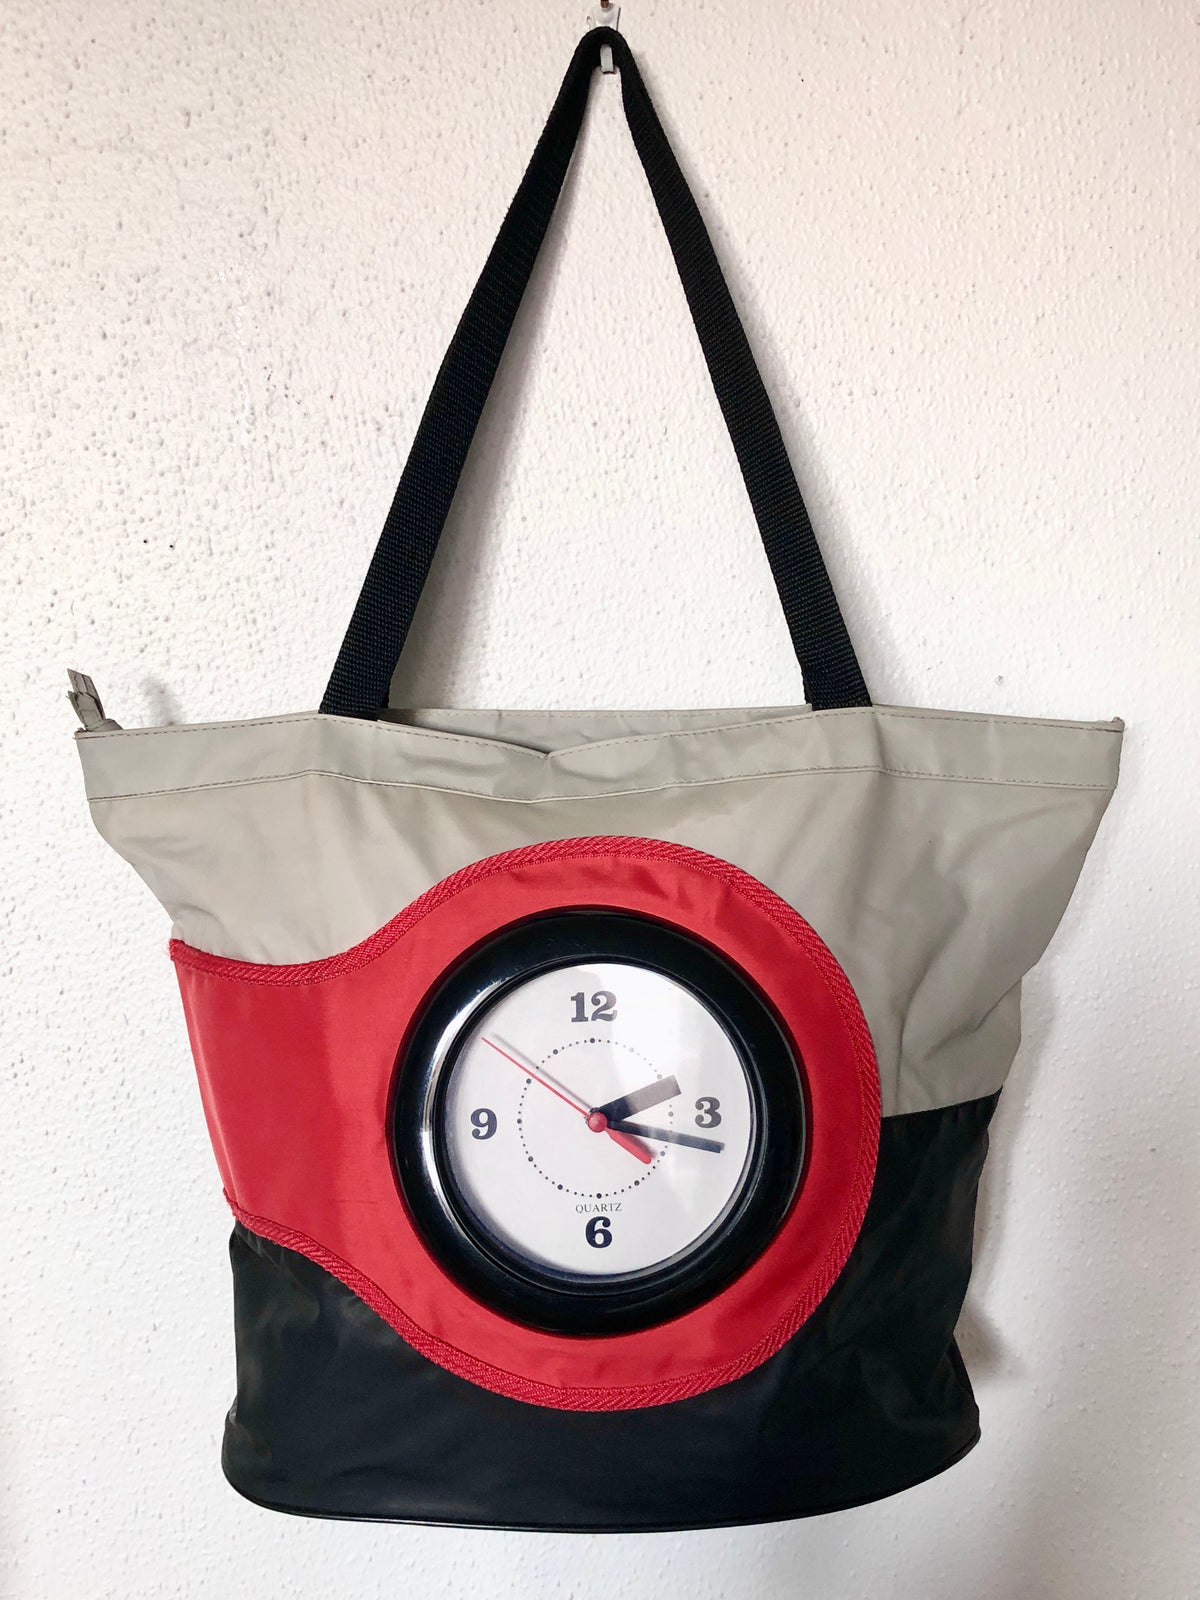 Vintage 1980s Clock Tote Bag - Grey, Black, Red